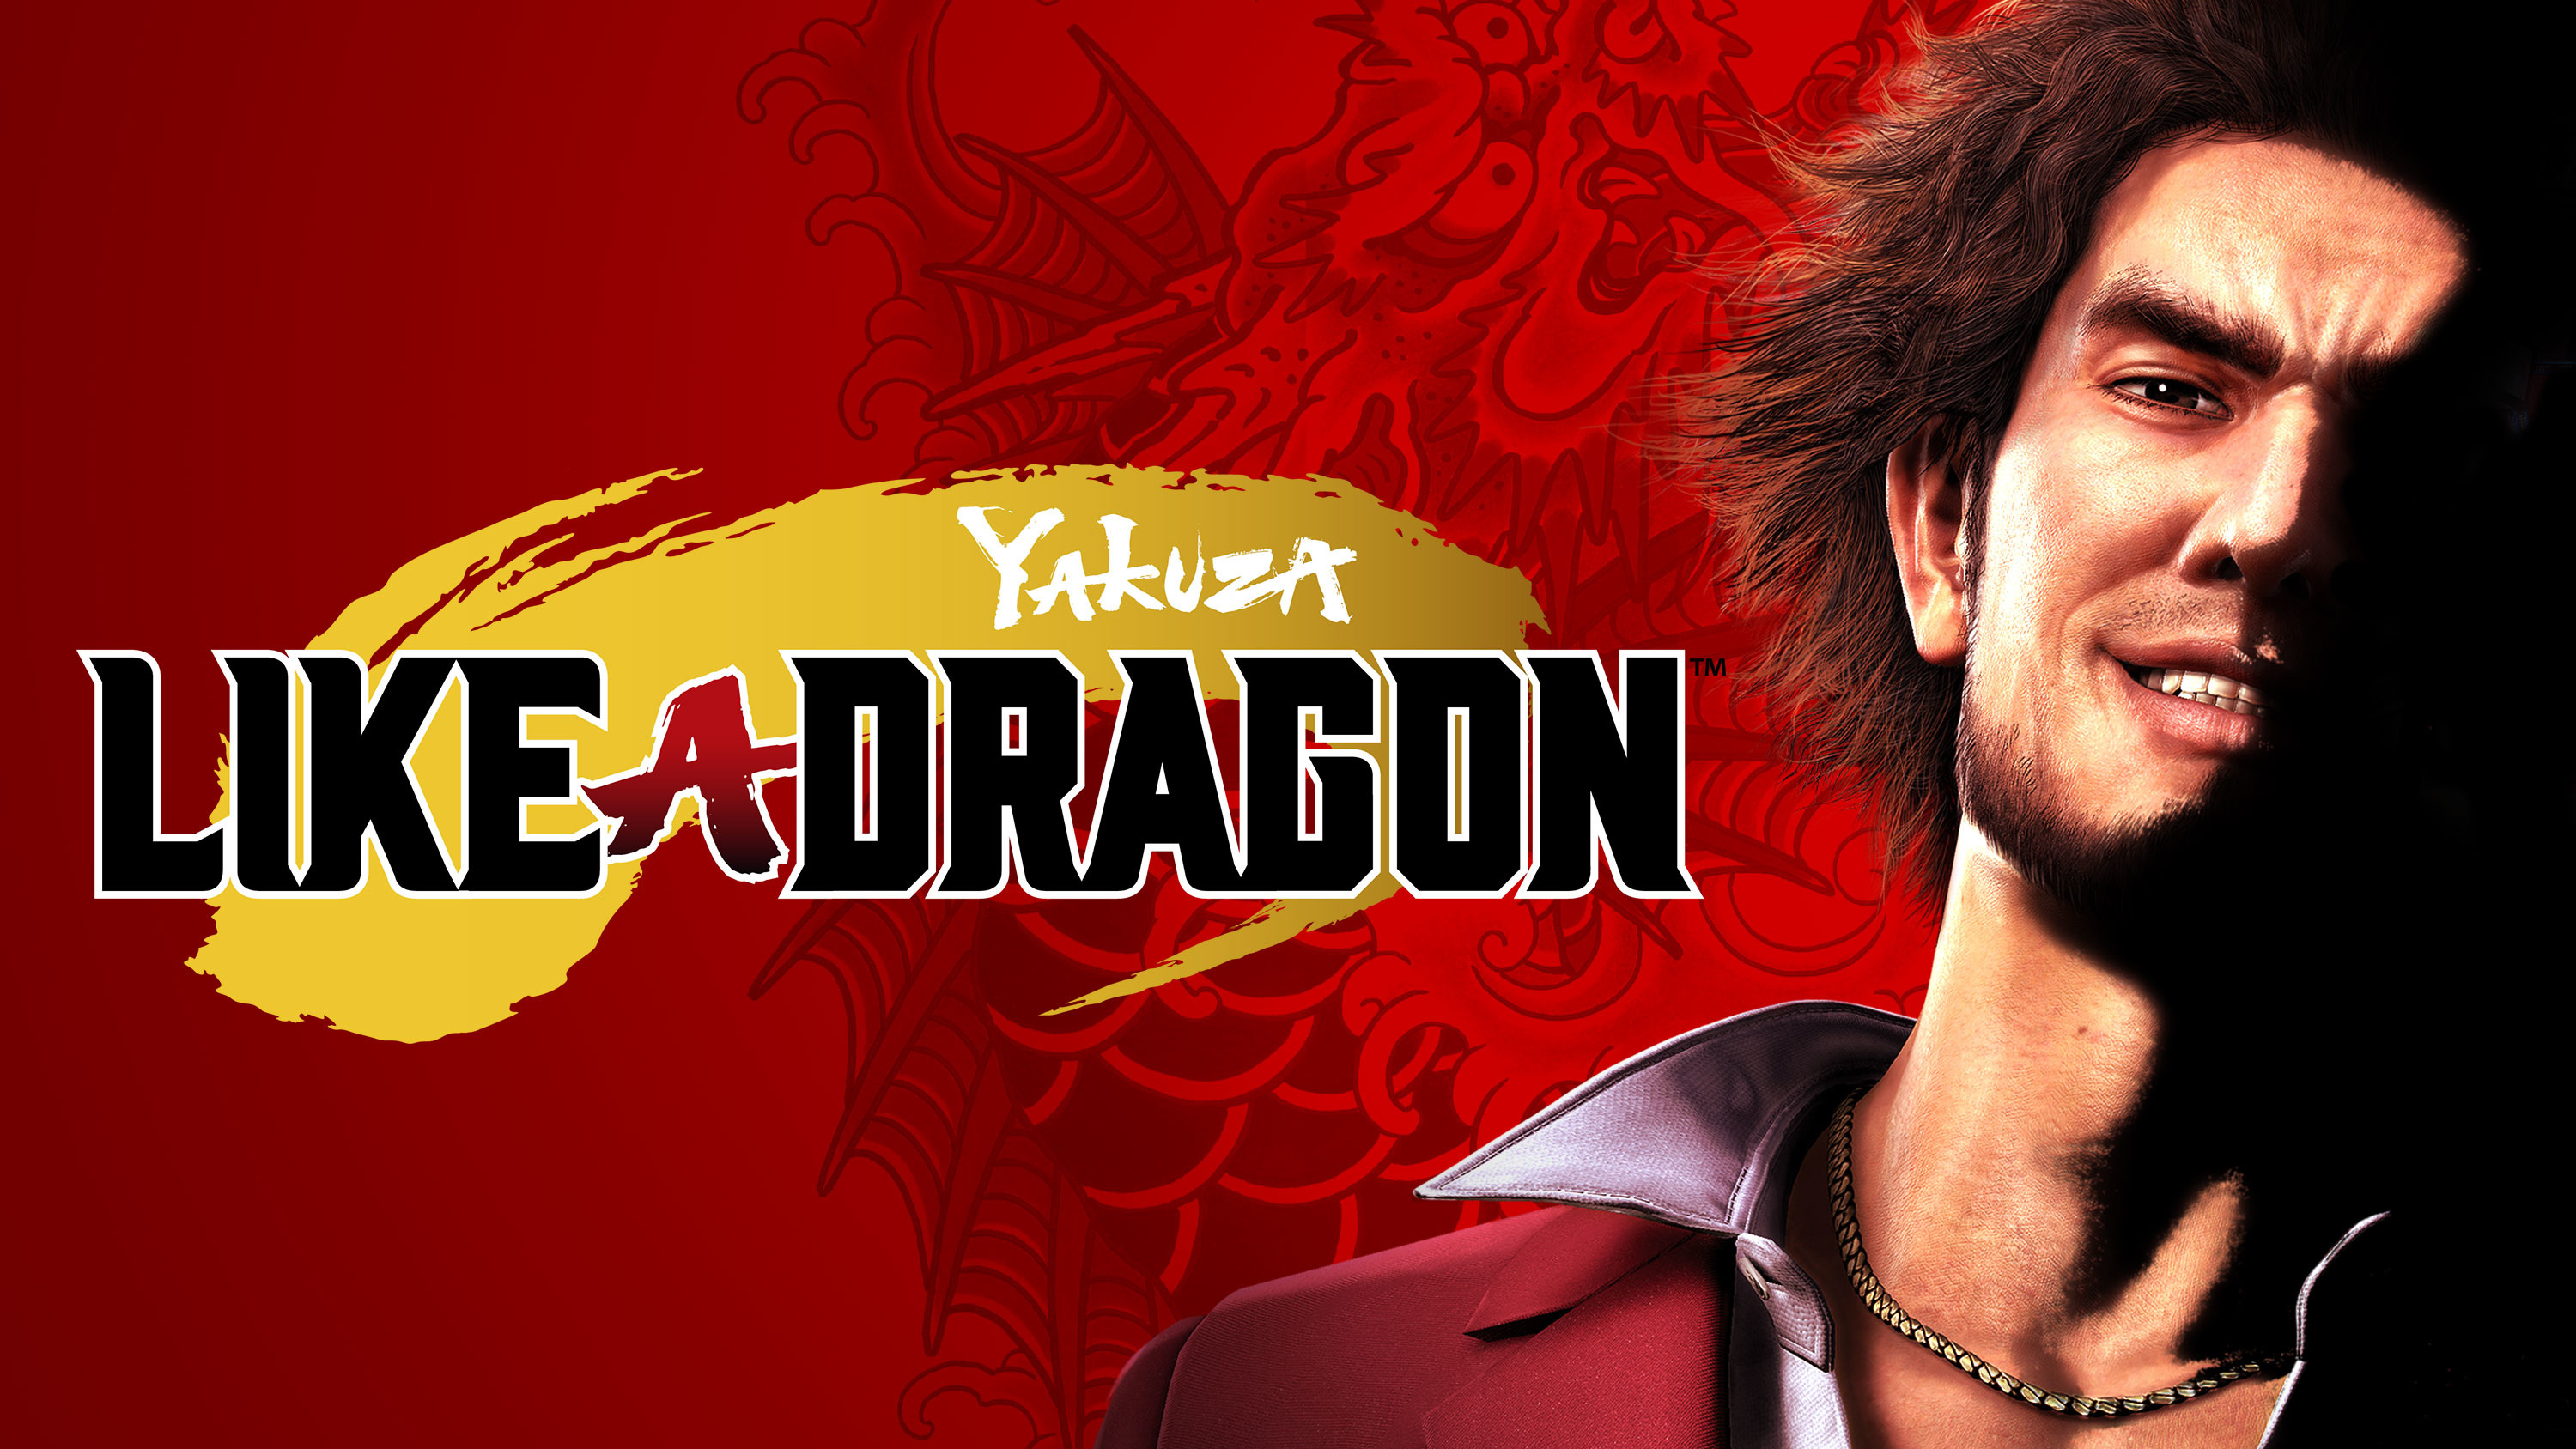 El estudio Ryu Ga Gotoku, desarrollador de Like a Dragon, hará un "gran anuncio" este año